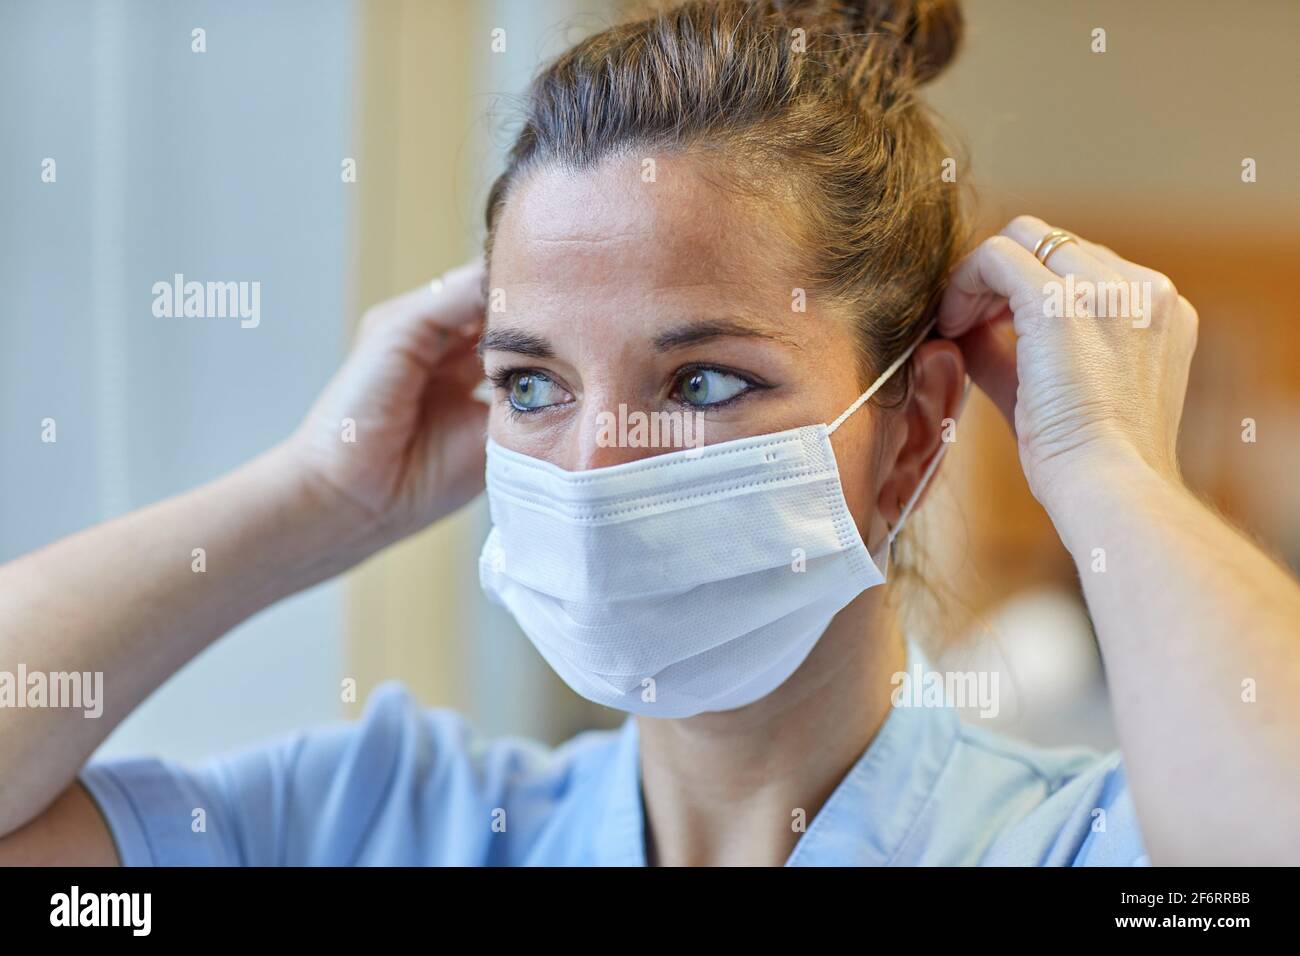 Retrato de una trabajadora de salud que se coloca una máscara protectora, enfermera, hospital Foto de stock